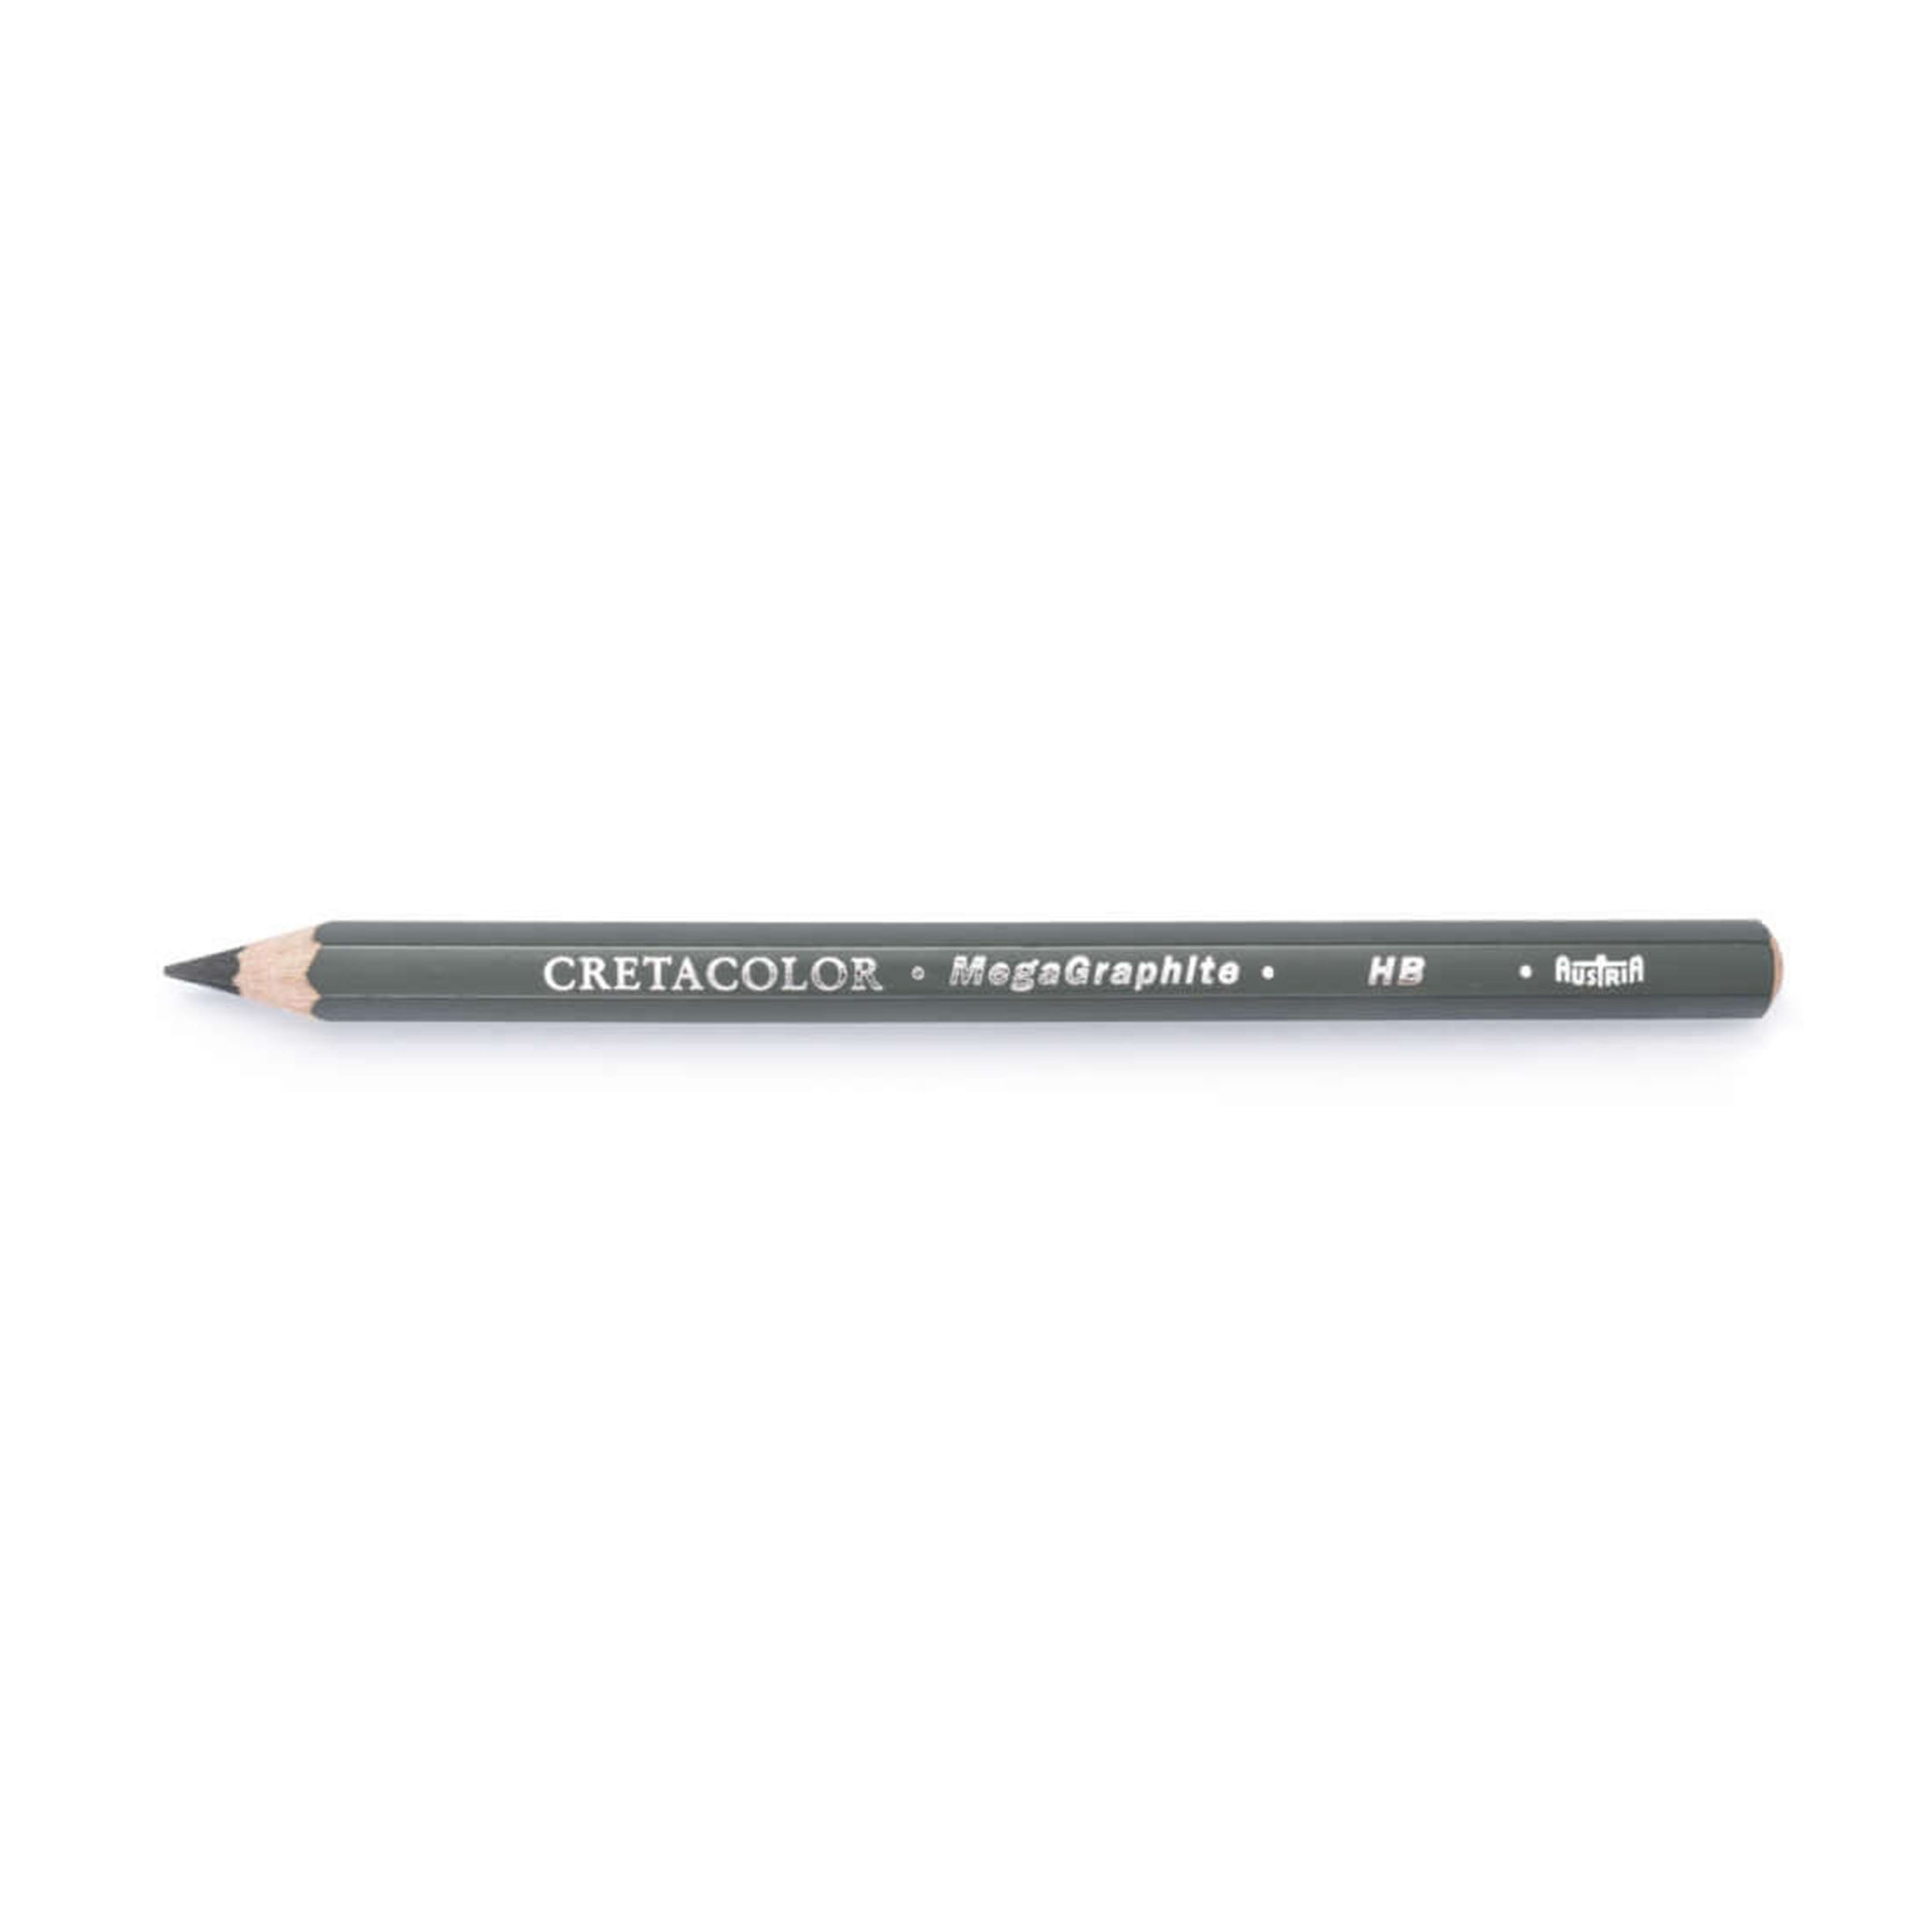 Cretacolor MegaGraphite Pencil